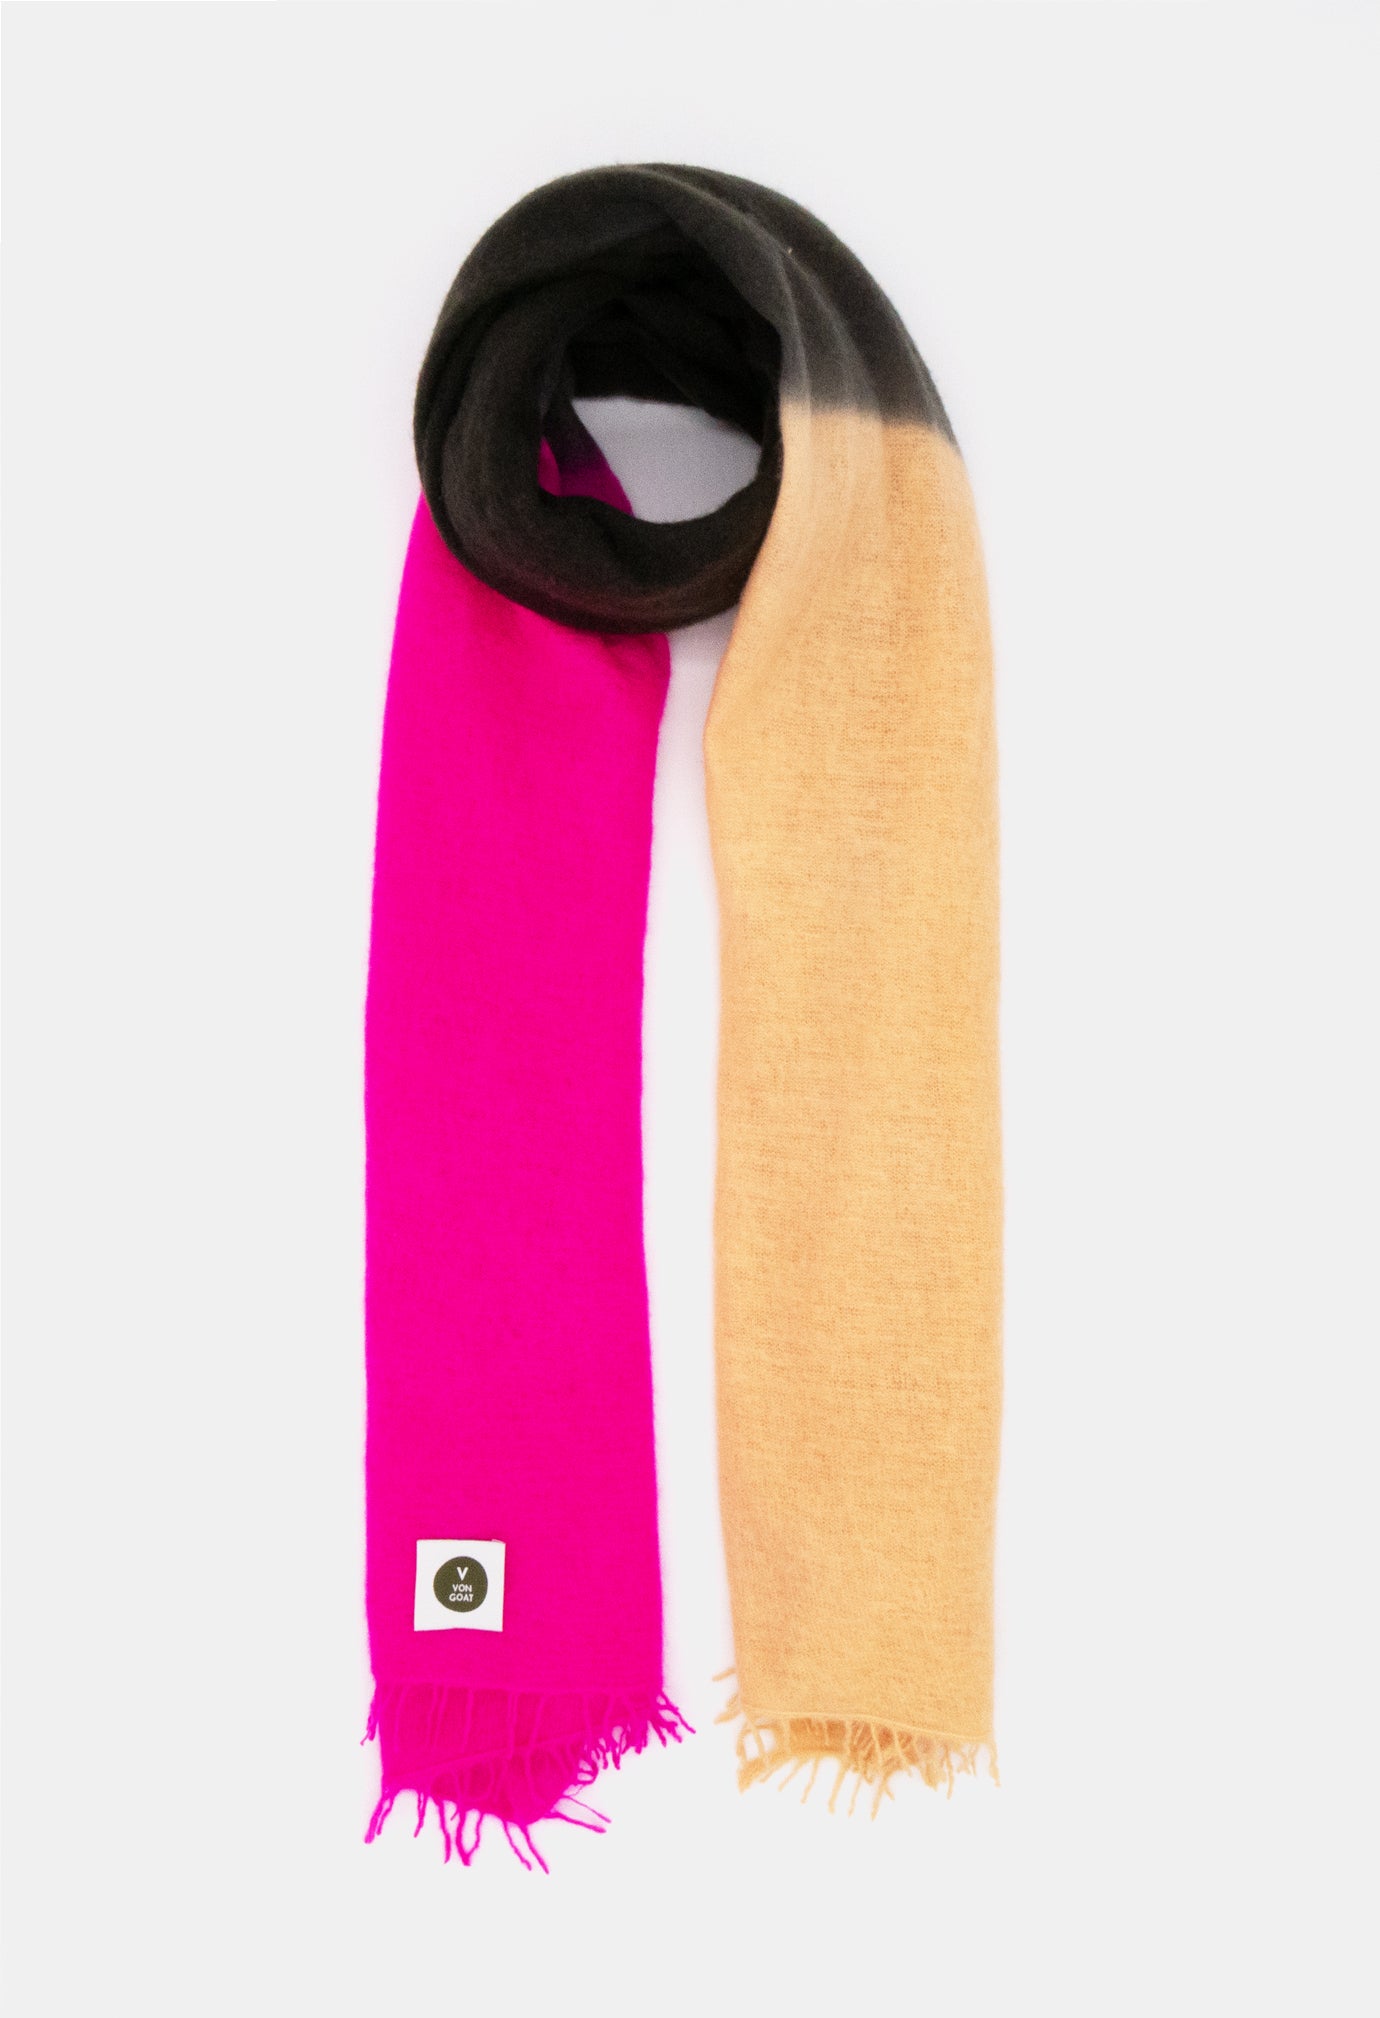 V Von Goat Kaschmir-Schal mit Fransen im Tiedye-Stil in den Farben Pink und Beige und Braun aus reiner Cashmere-Wolle auf weißem Untergrund.